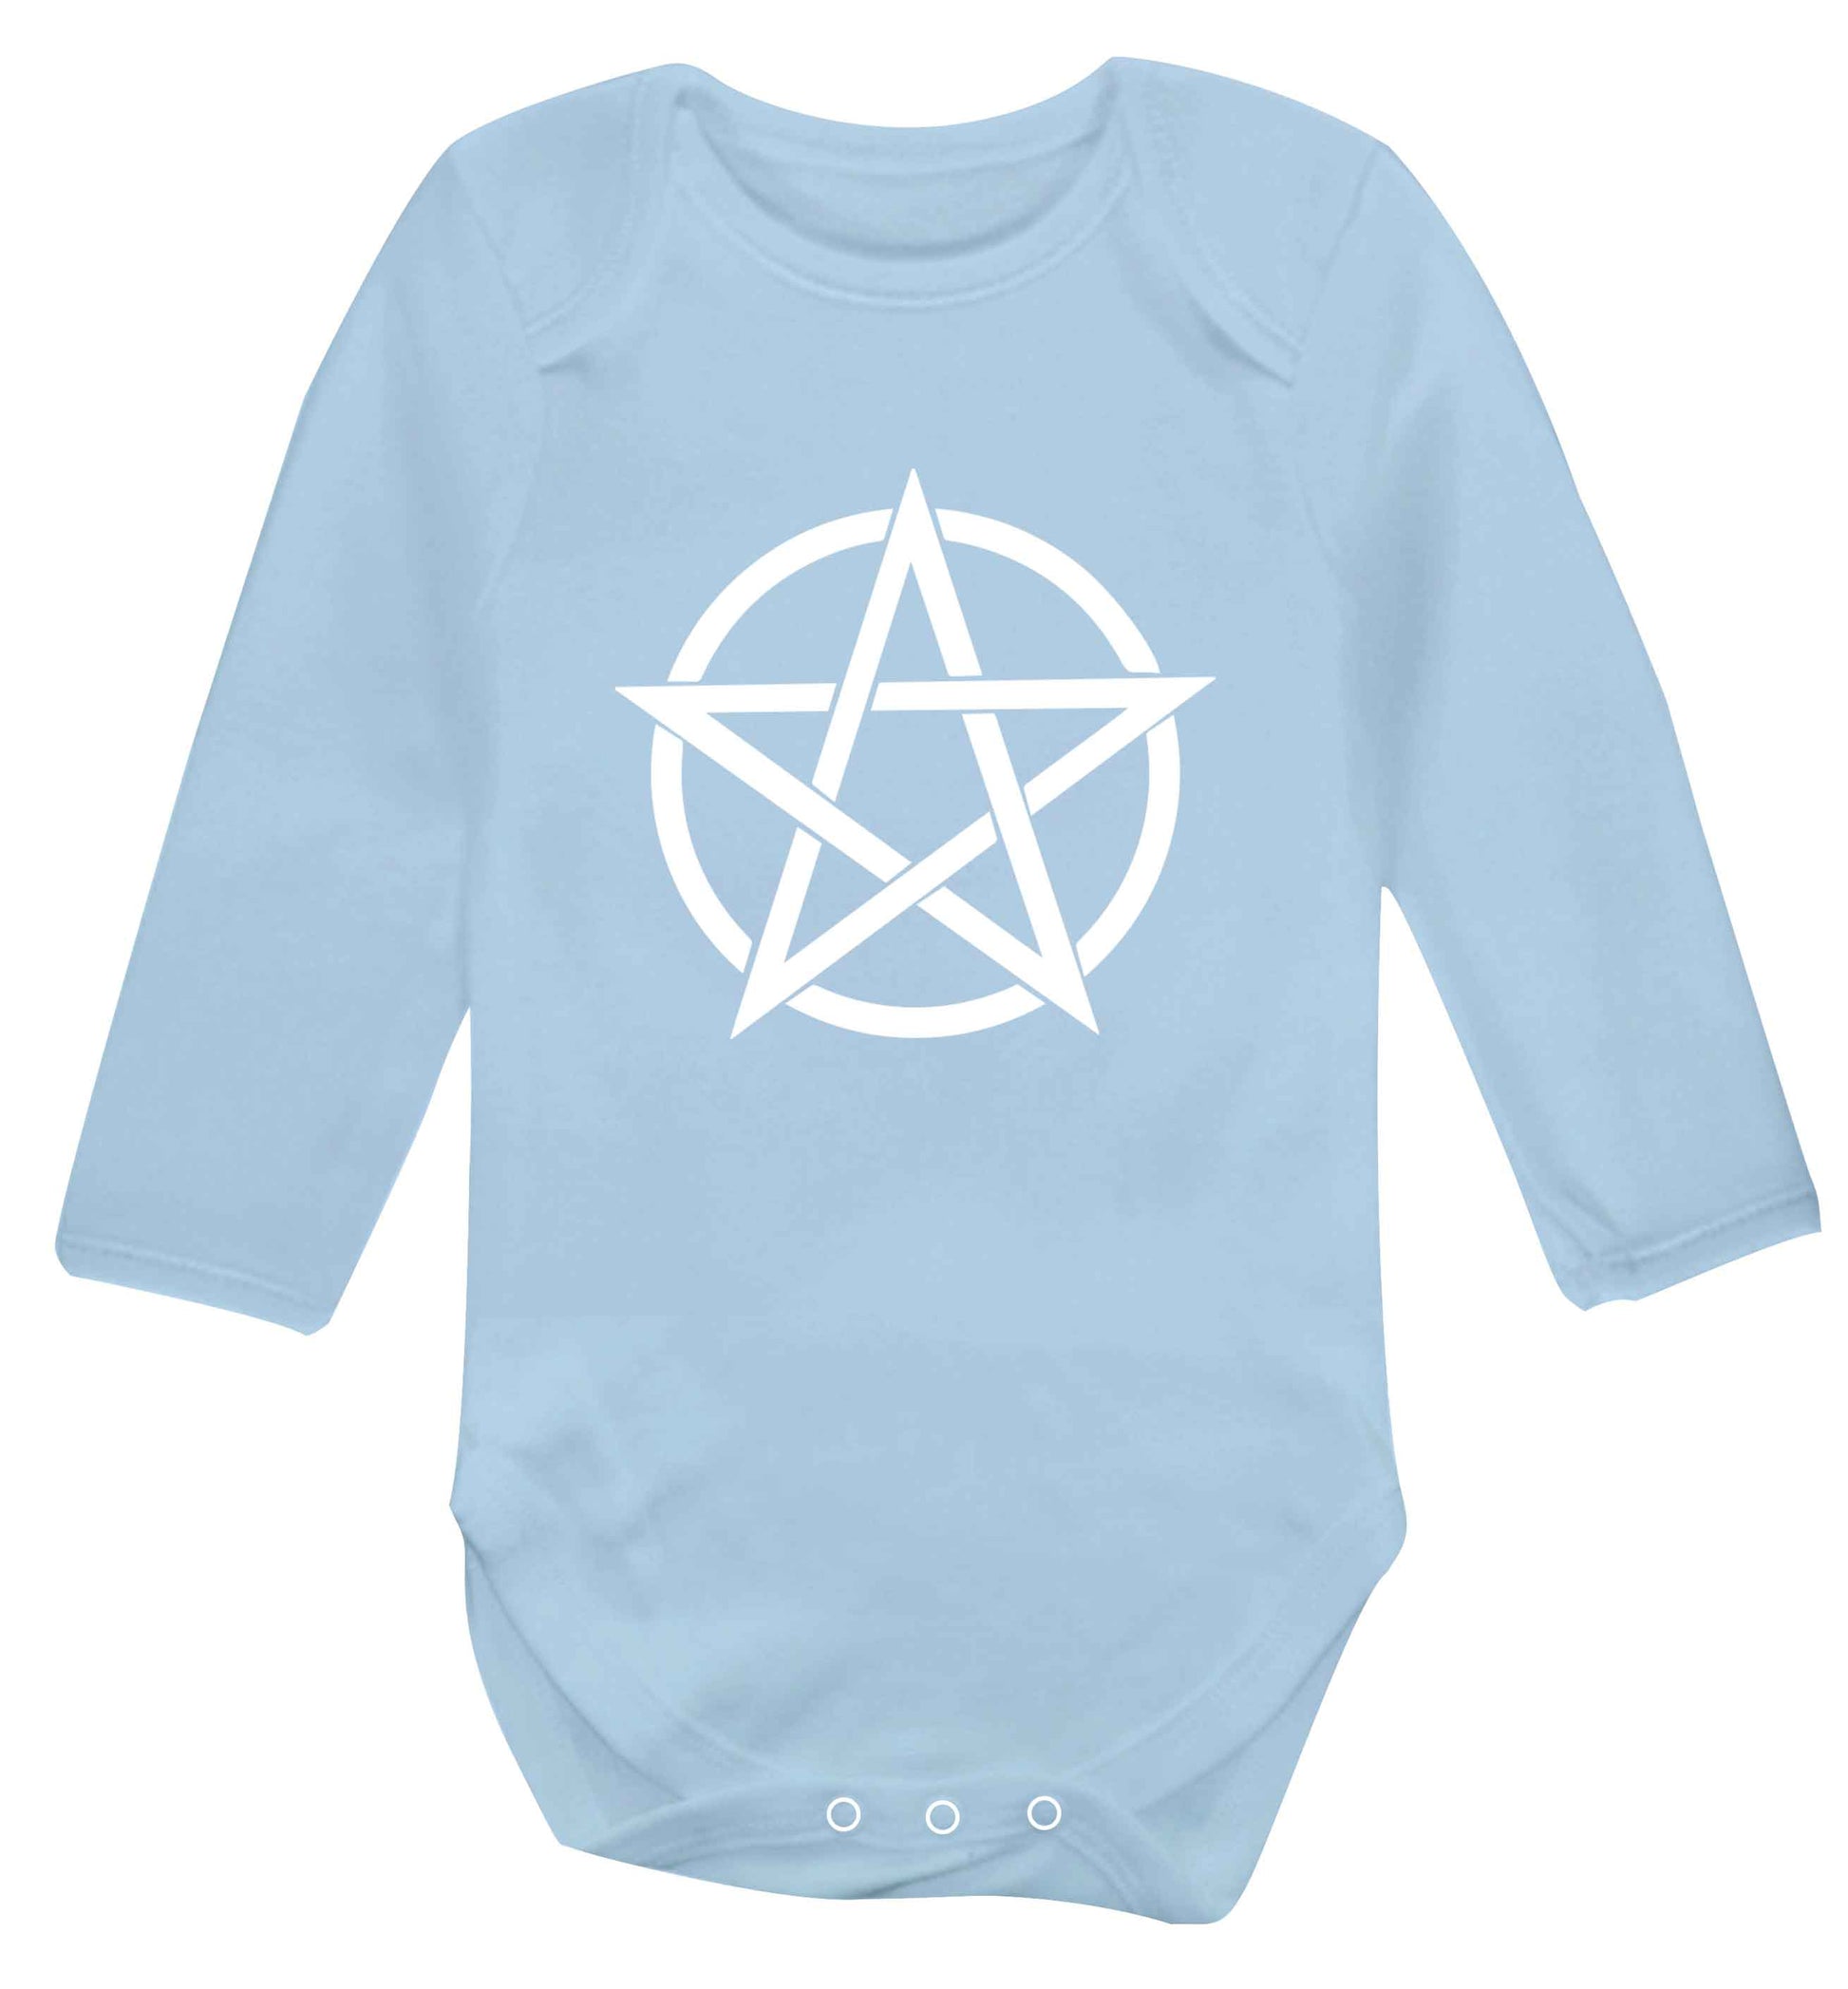 Pentagram symbol baby vest long sleeved pale blue 6-12 months